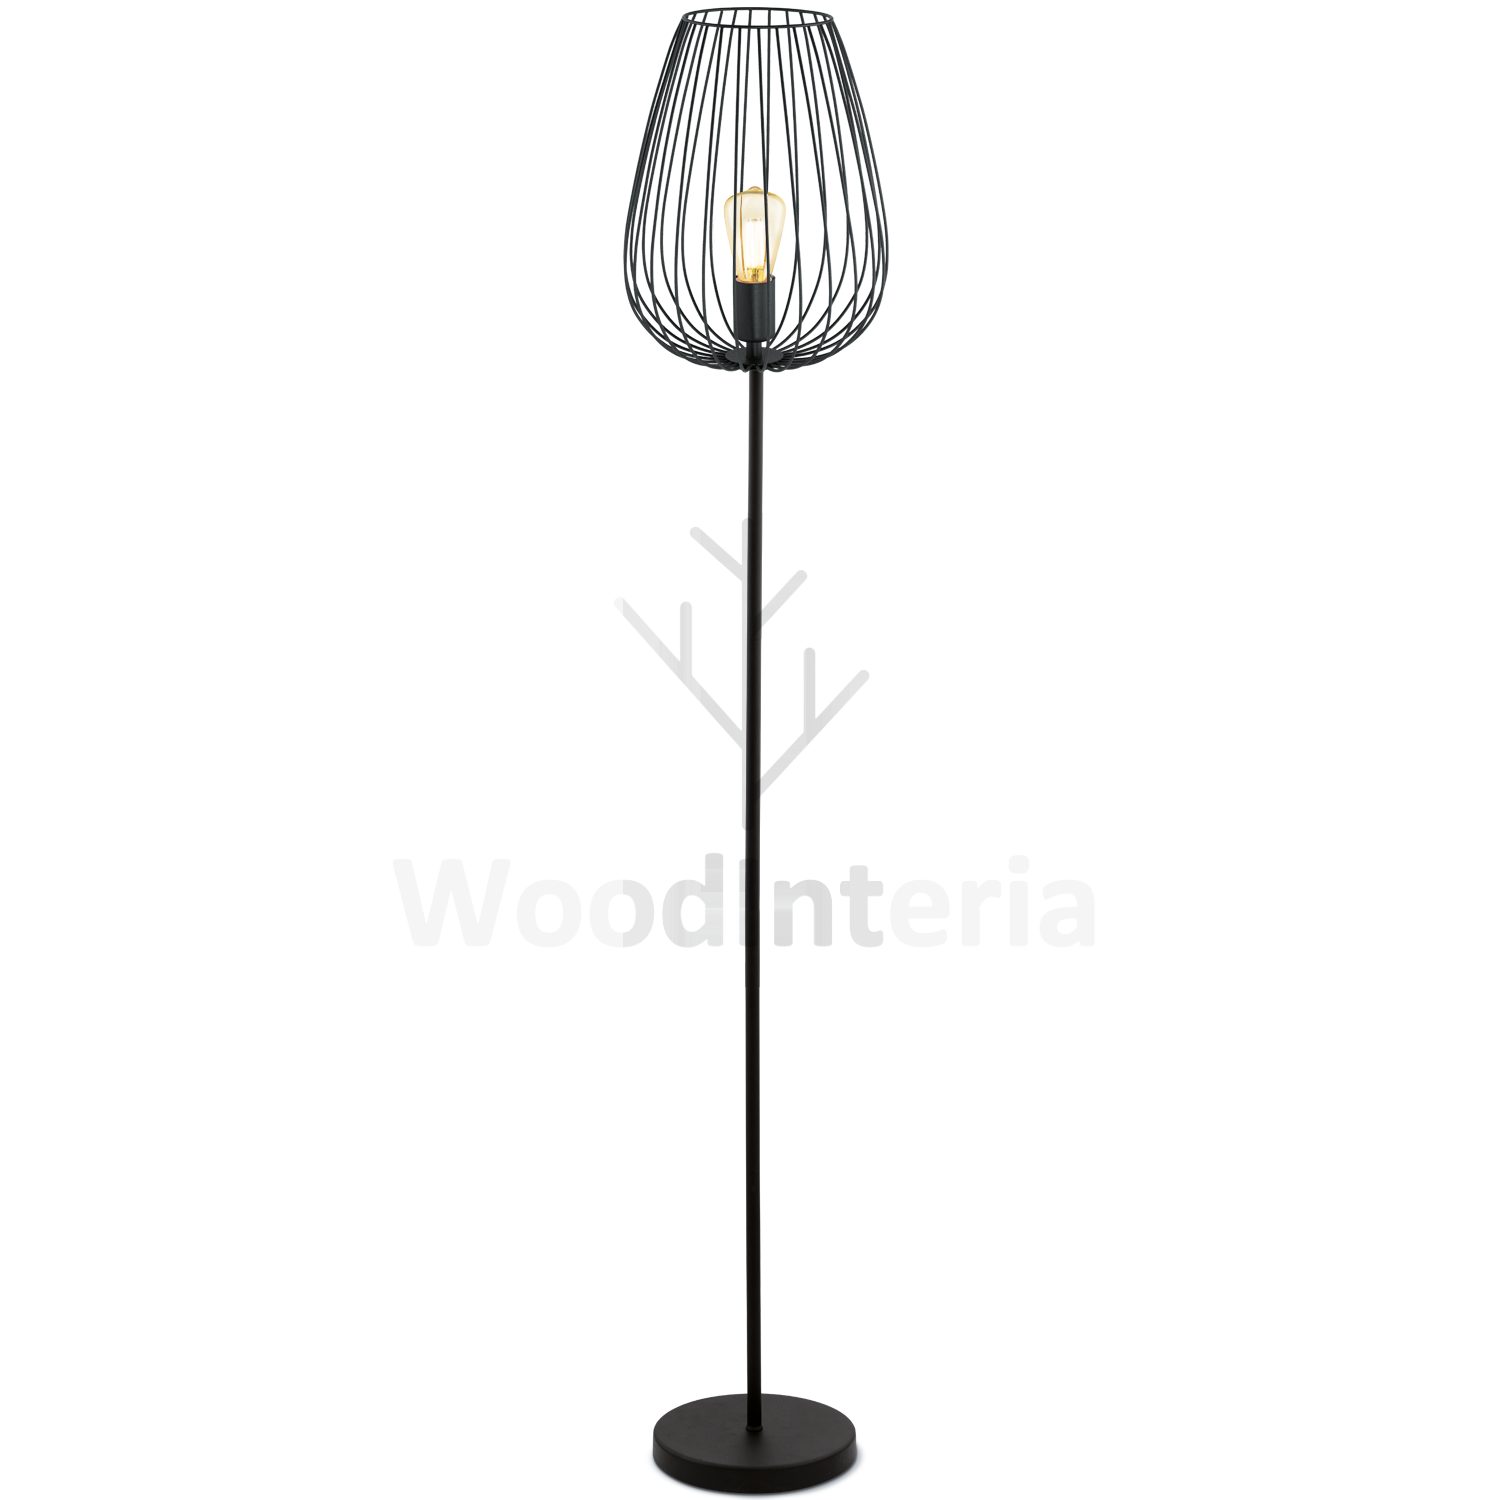 фото напольный светильник metal bud floor в скандинавском интерьере лофт эко | WoodInteria